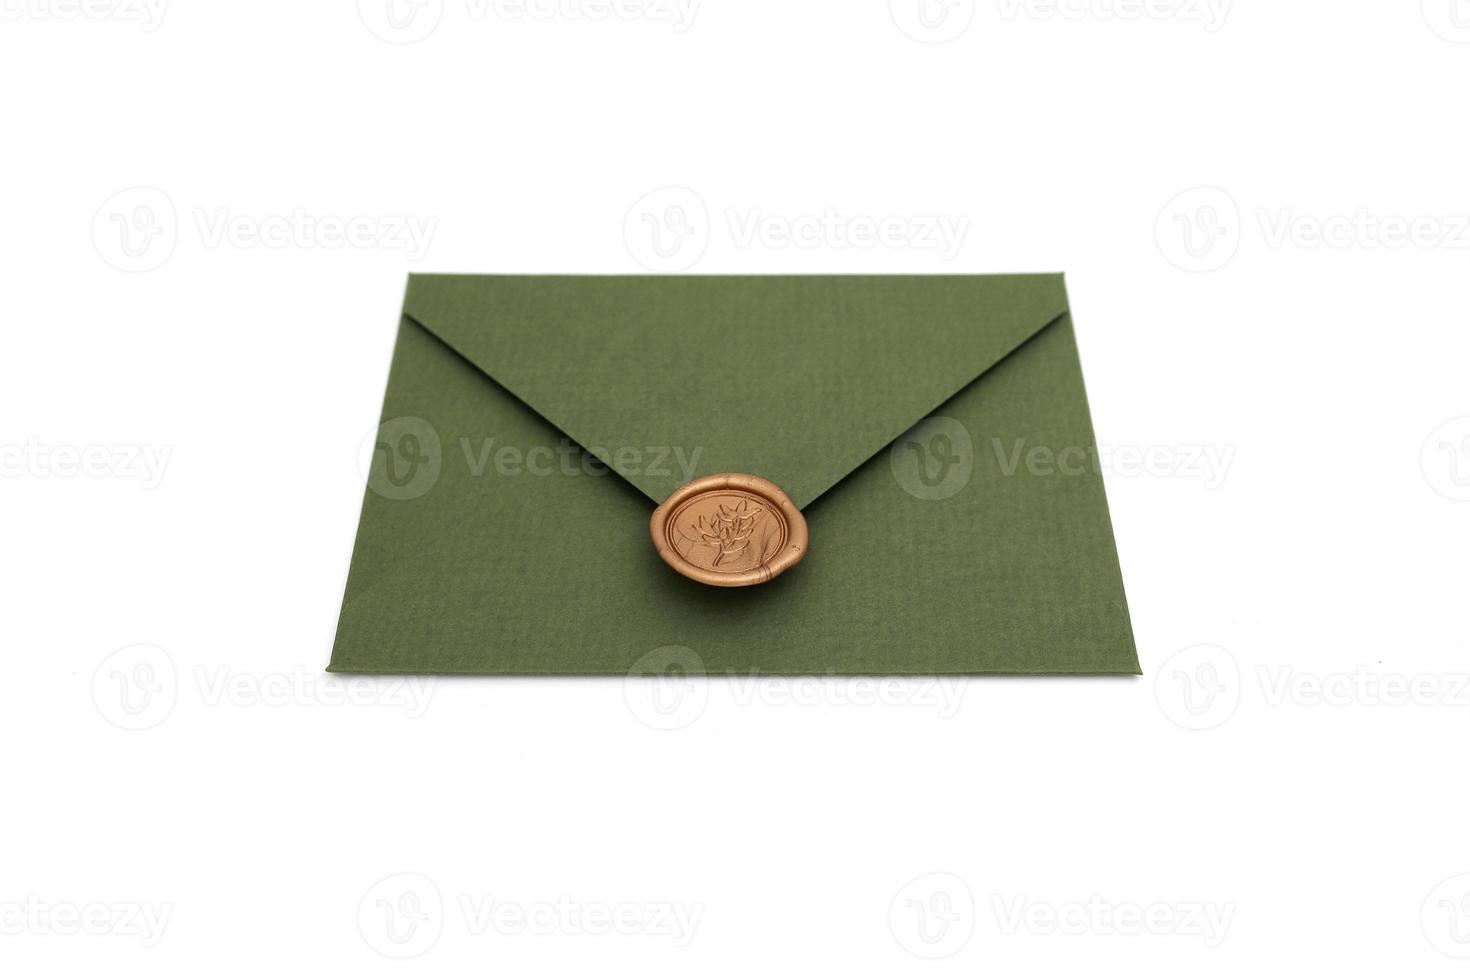 enveloppe verte avec carton design et sceau sur fond blanc. enveloppe avec cachet photo